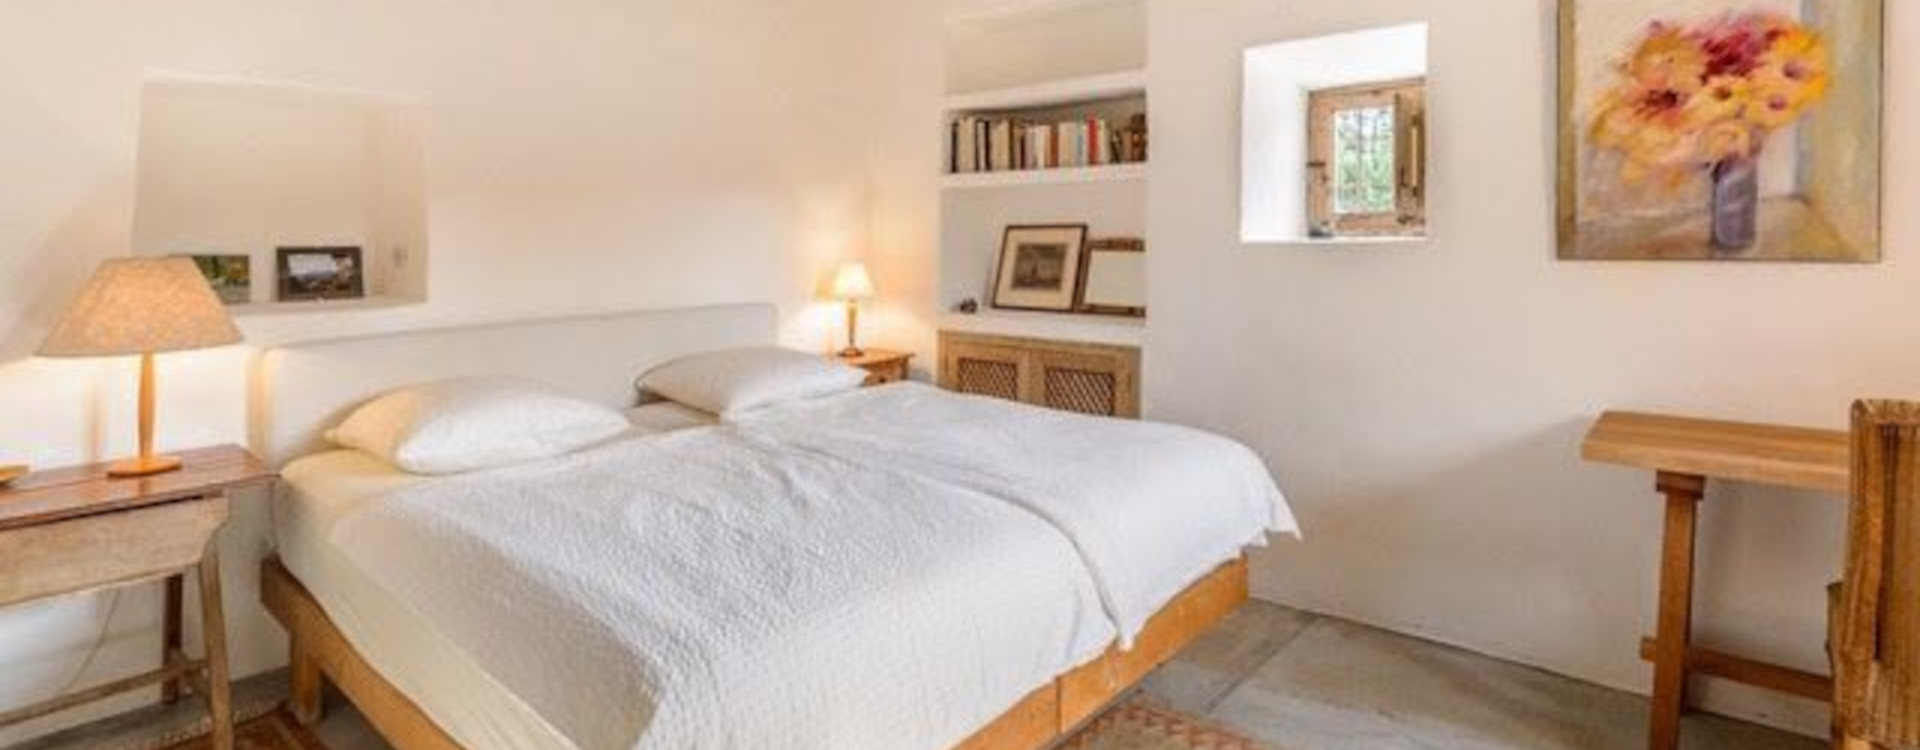 Casa Berner for rent ibiza villa bedroom